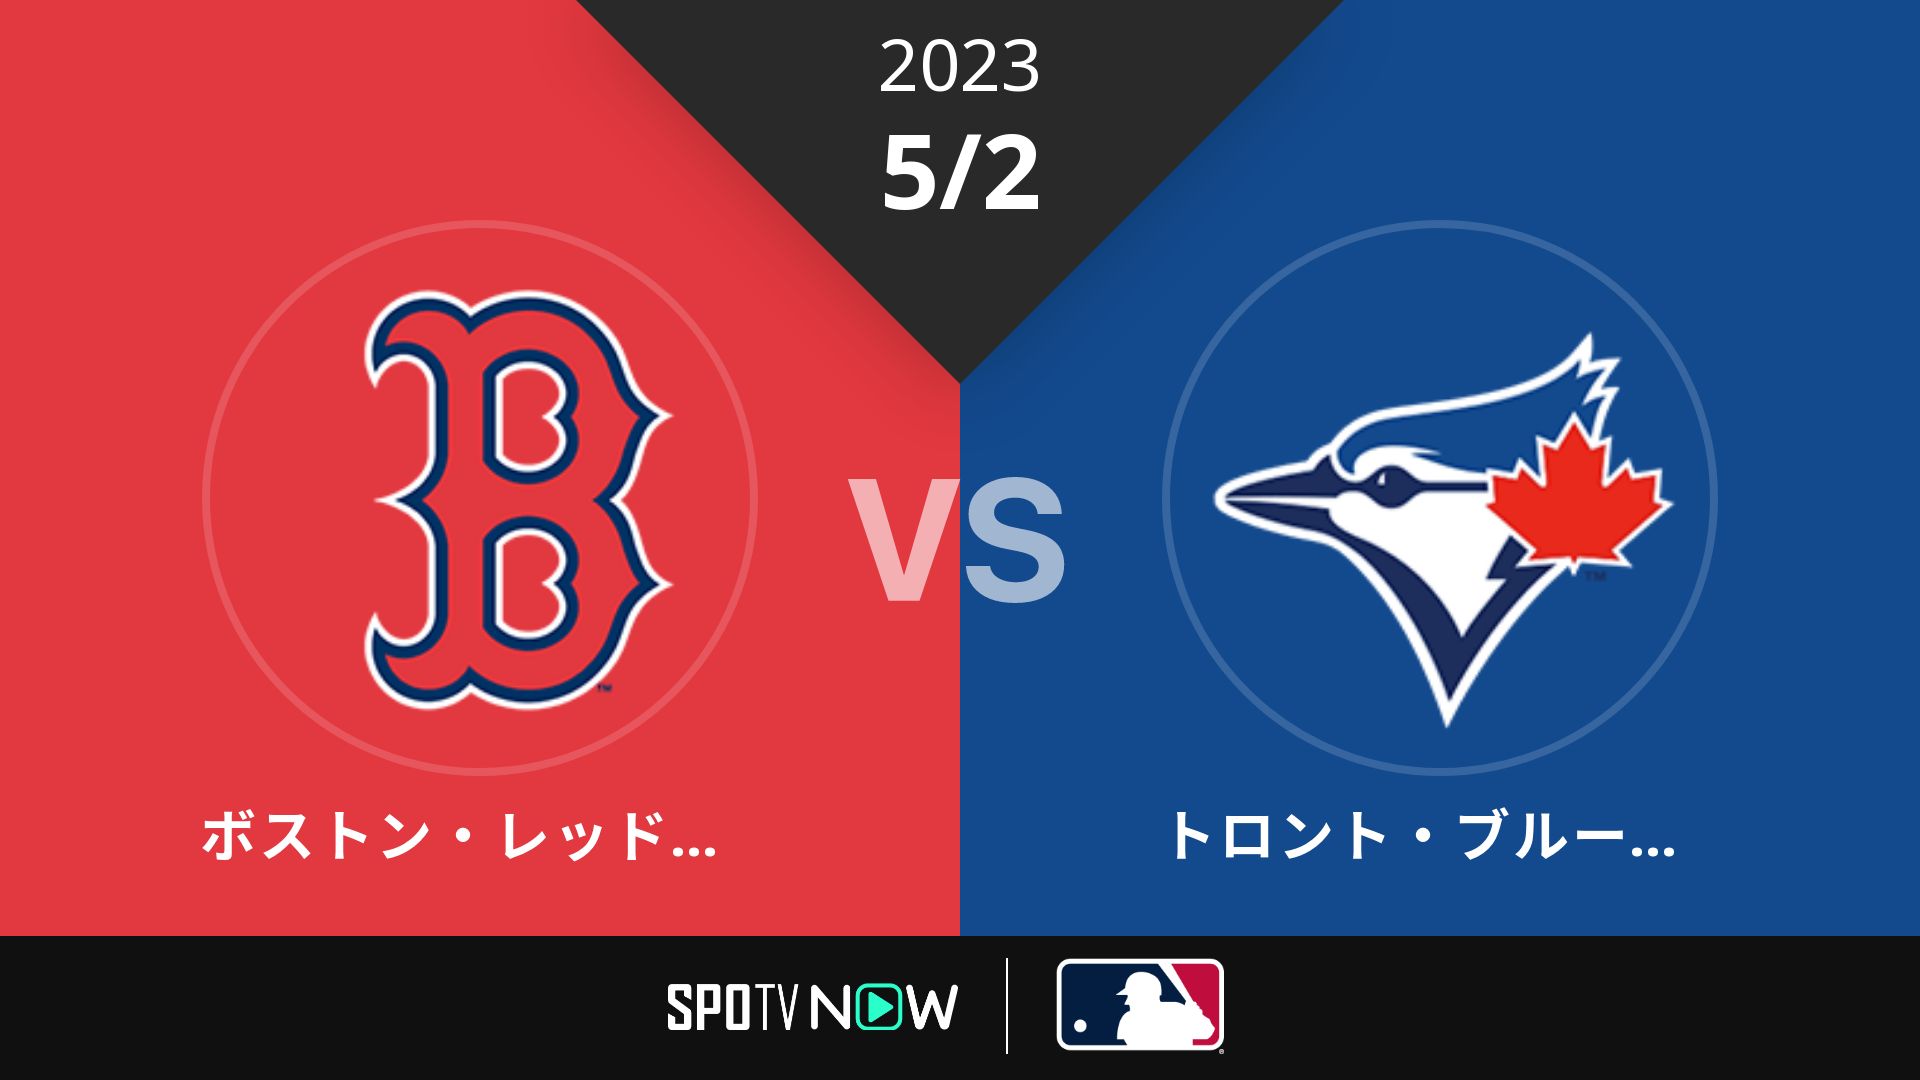 2023/5/2 Rソックス vs ブルージェイズ [MLB]